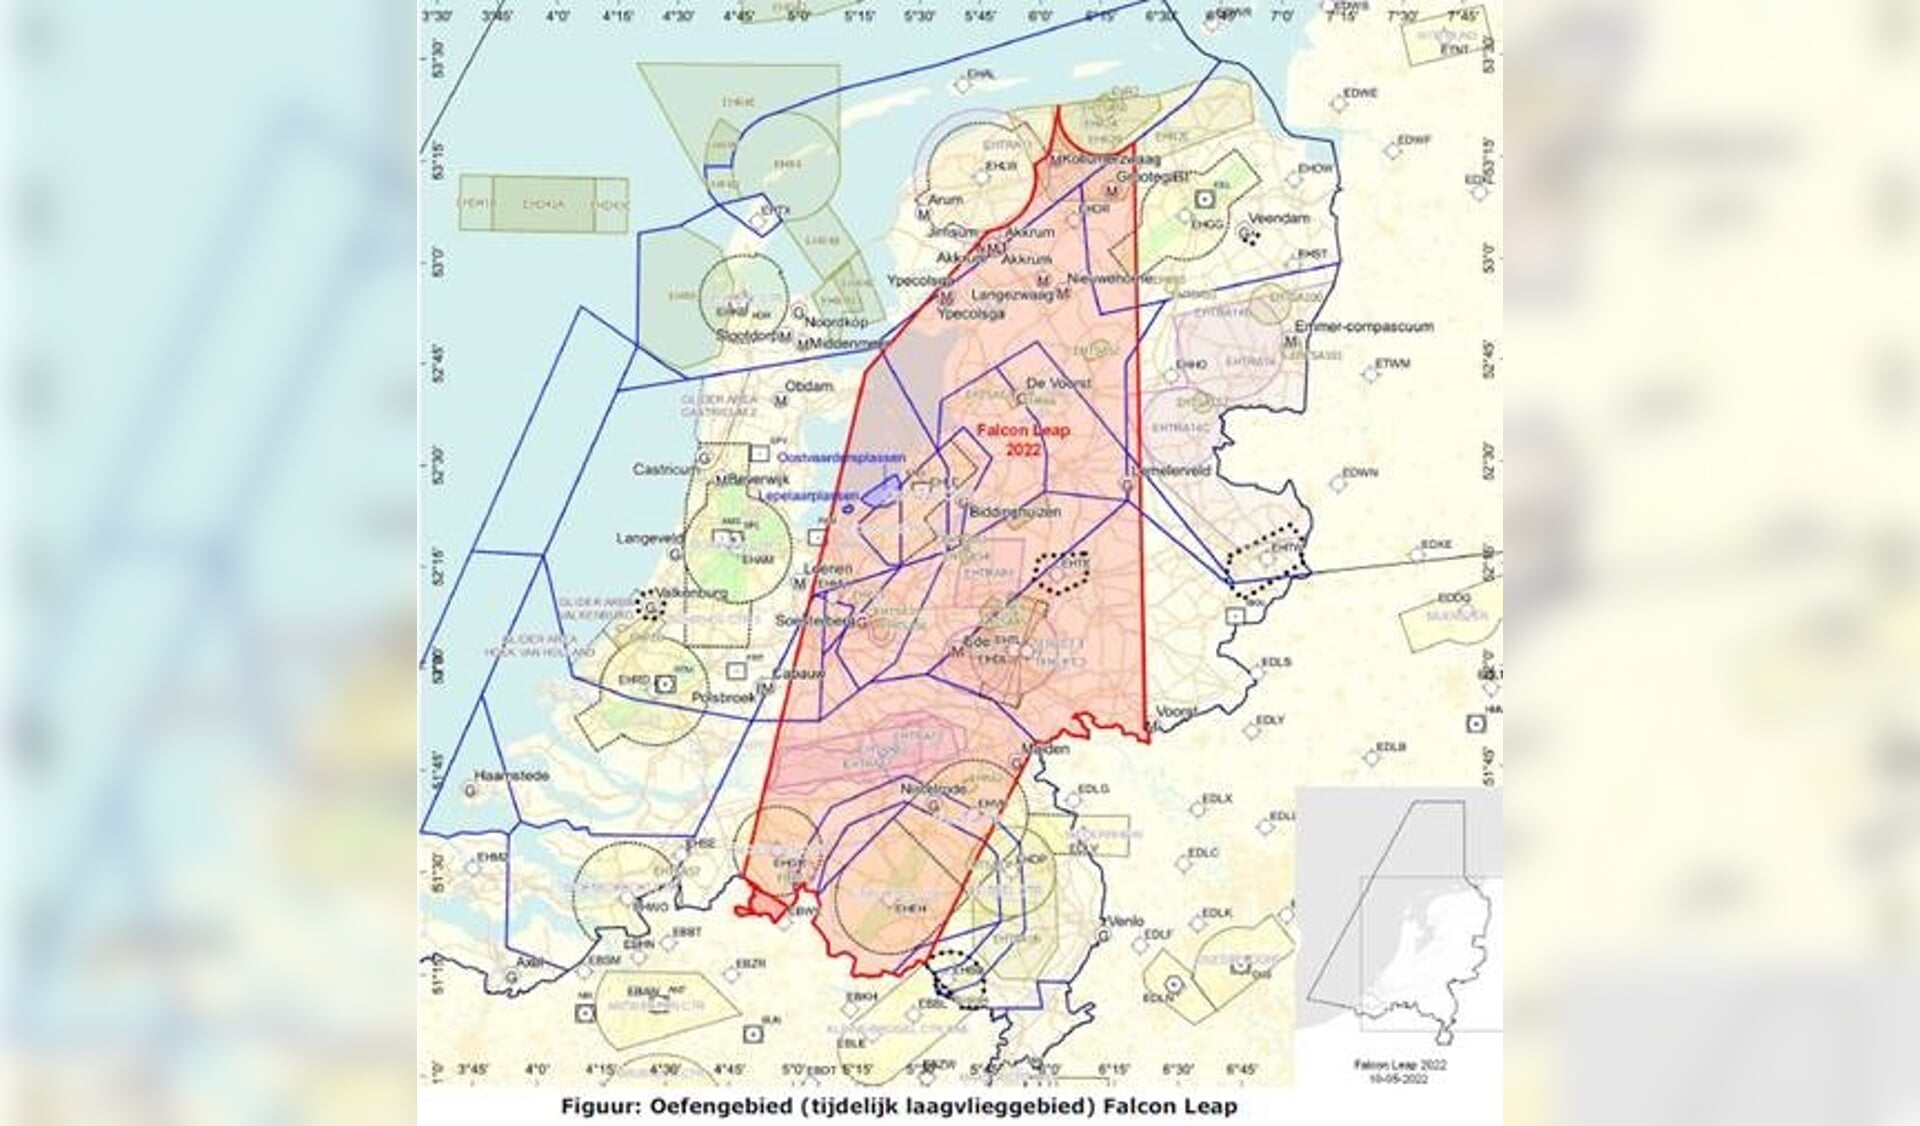 In de Marnewaard zijn van 5 tot en met 16 september twee soorten oefeningen van de Koninklijke Luchtmacht, onder andere de landelijke laagvliegoefening in het rood gekleurde gebied.